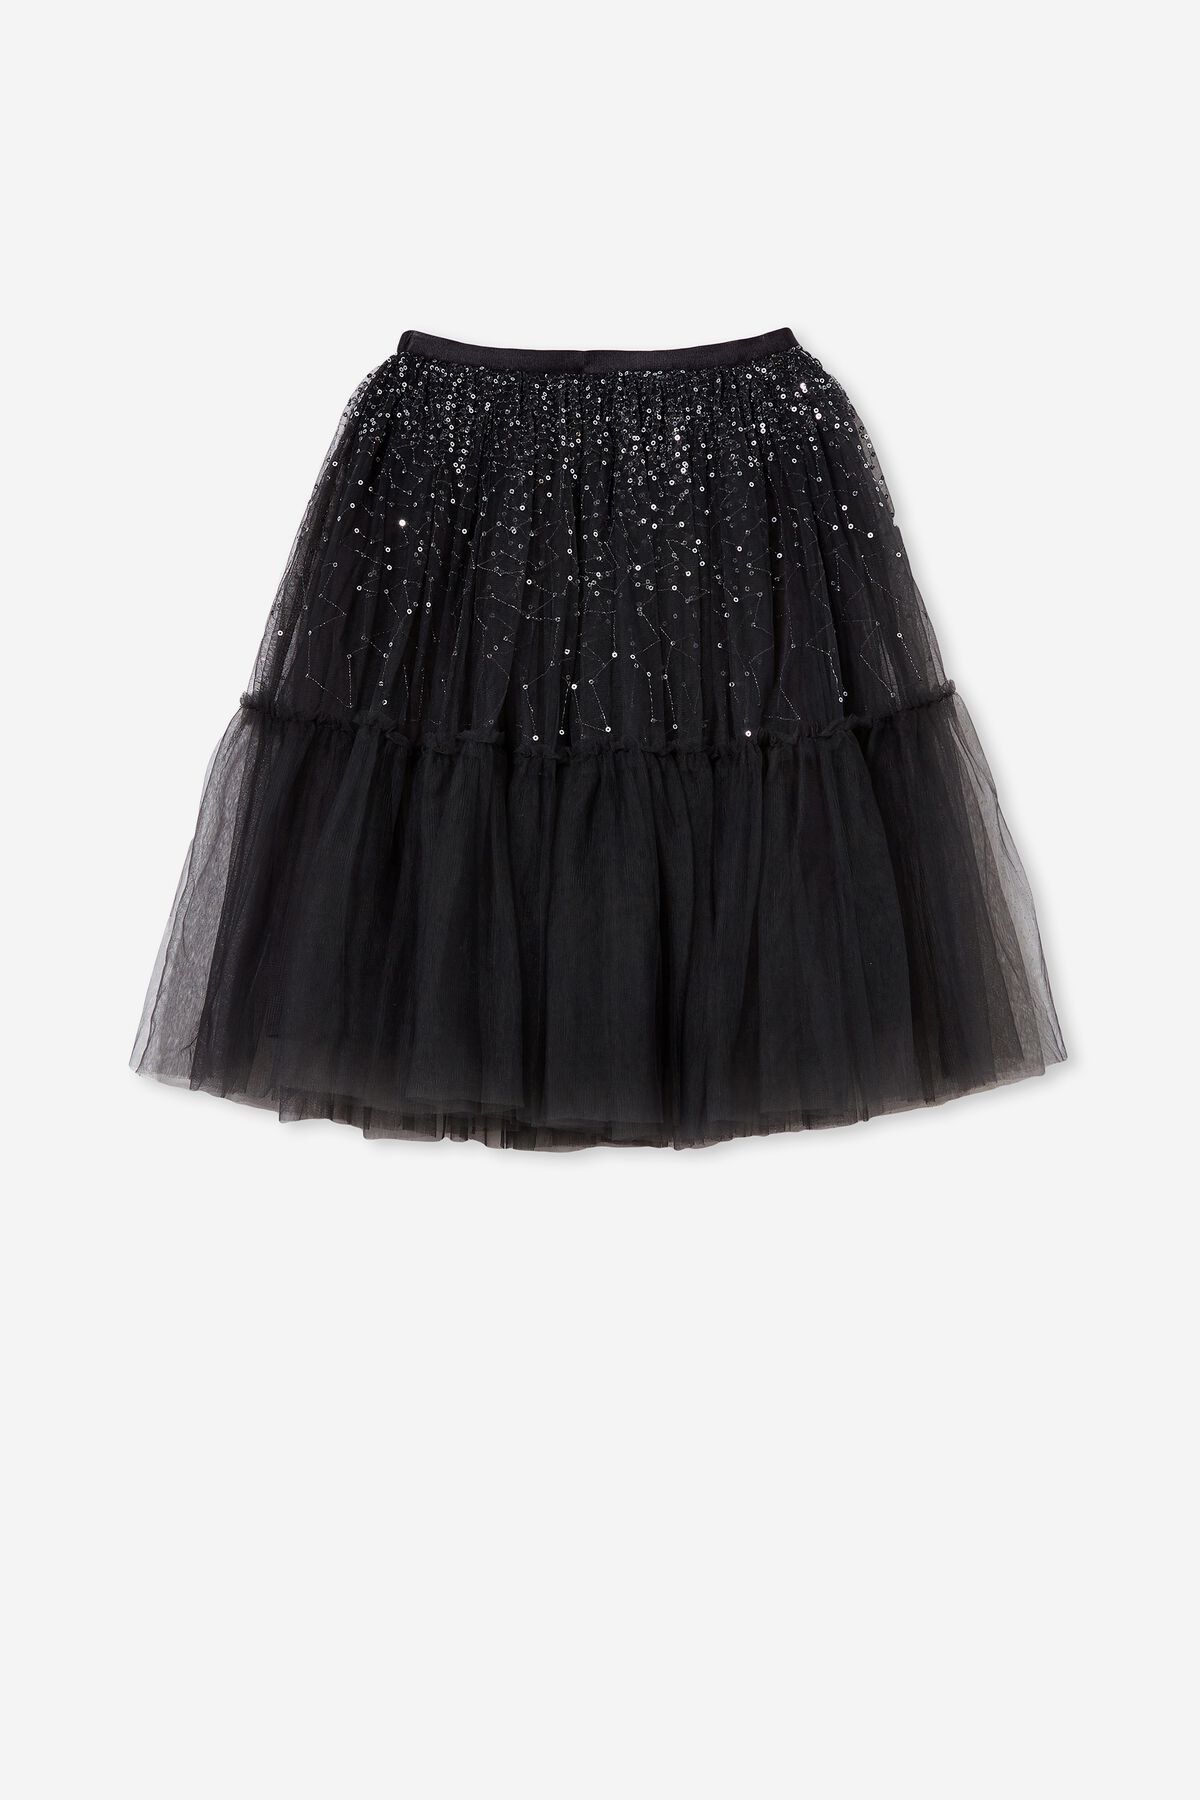 Trixiebelle Dress Up Skirt | Cotton On (ANZ)